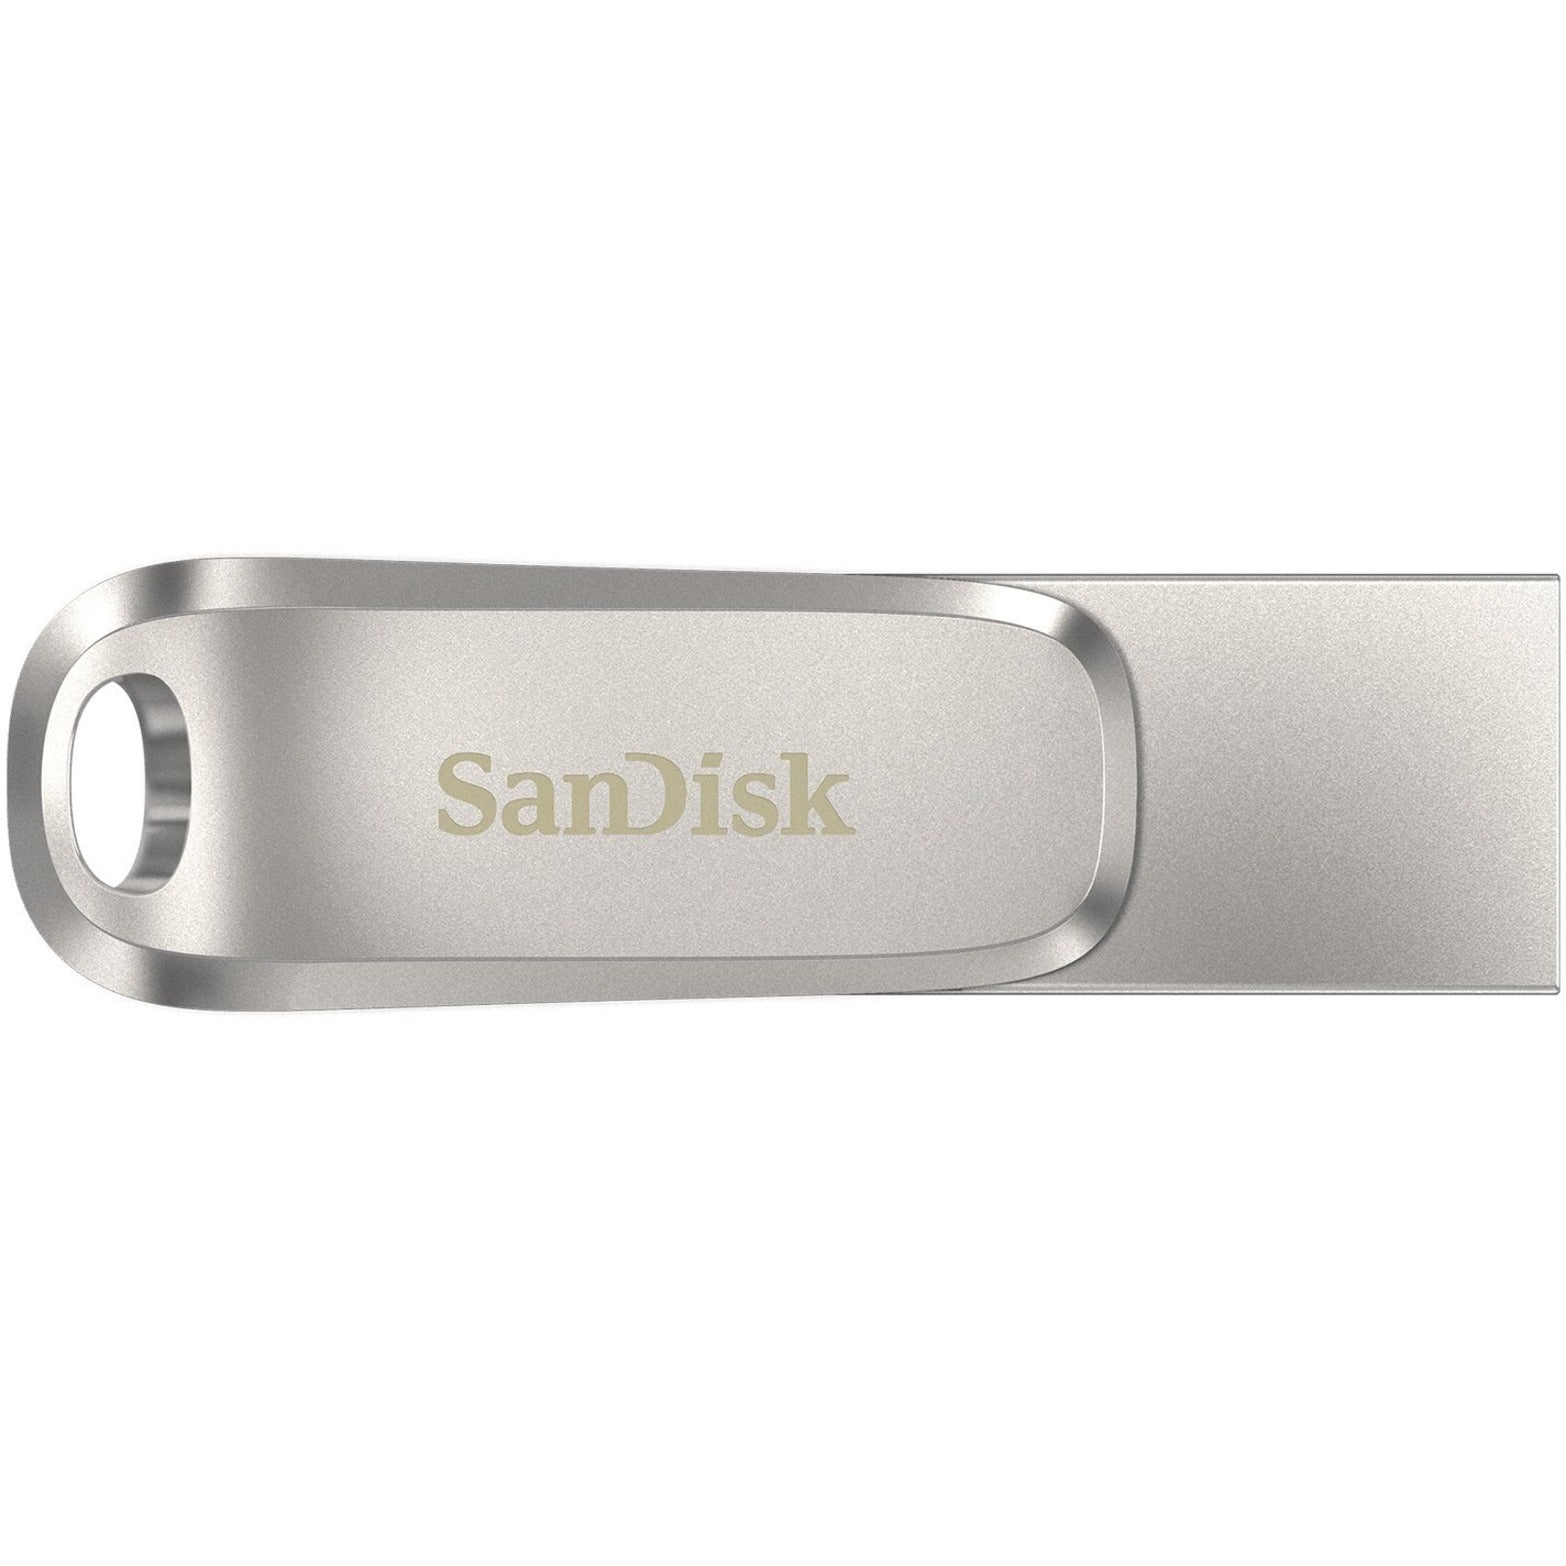 SanDisk Ultra Dual Drive Luxe USB Type-C - 128GB Transferencia de Datos y Almacenamiento de Alta Velocidad